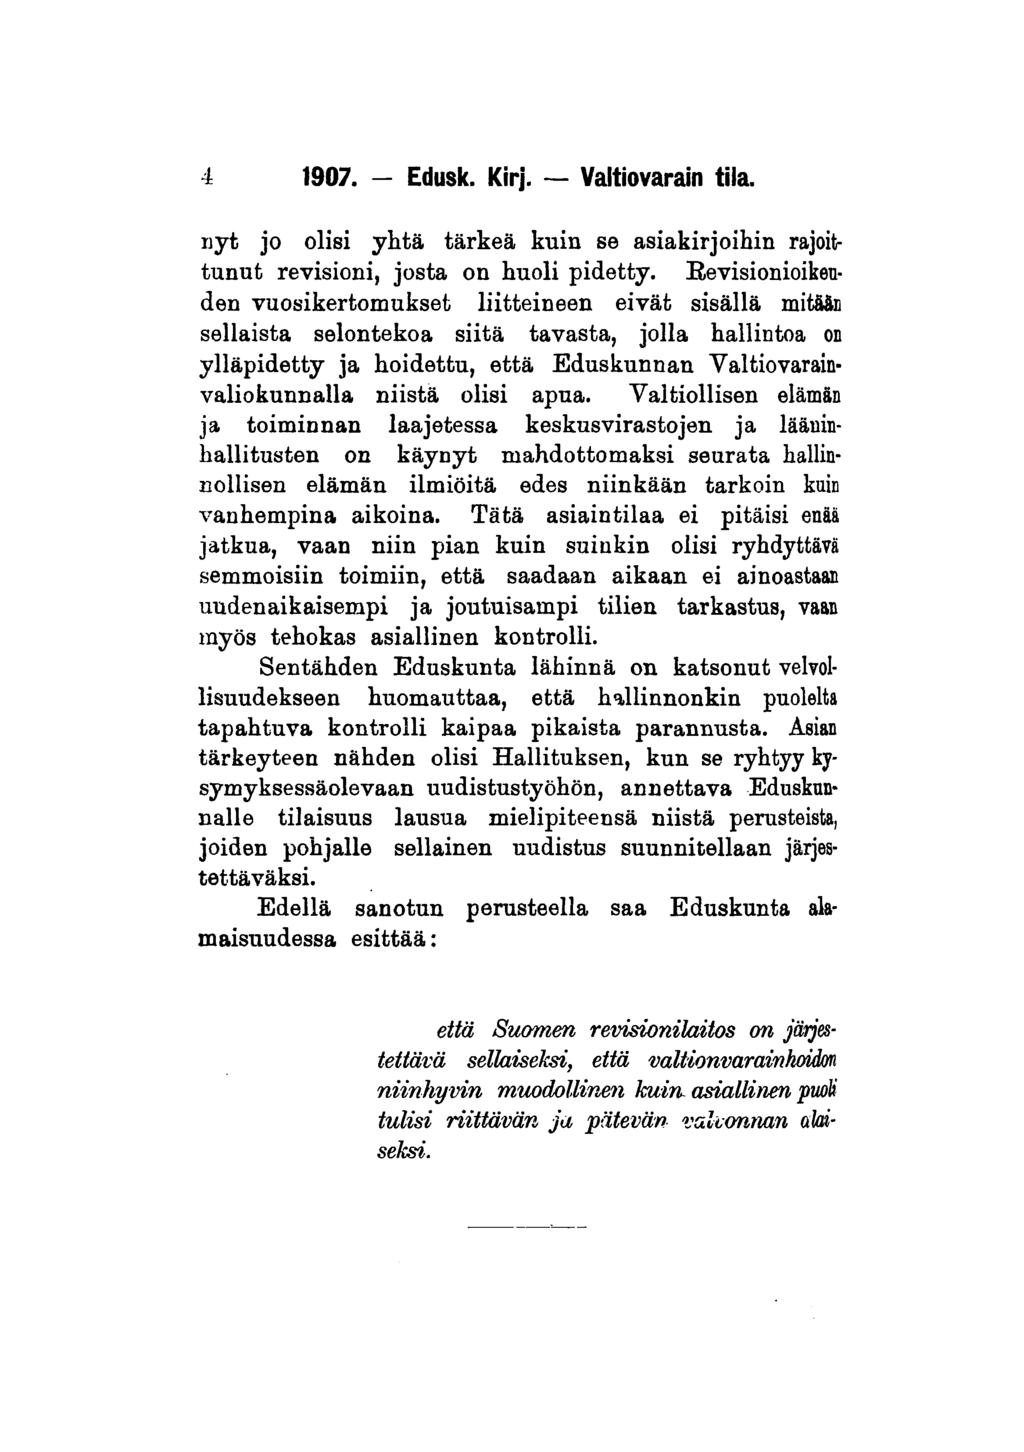 4 1907. - Edusk. Kirj. Valtiovarain tila. nyt jo olisi yhtä tärkeä kuin se asiakirjoihin rajoittunut revisioni, josta on huoli pidetty.